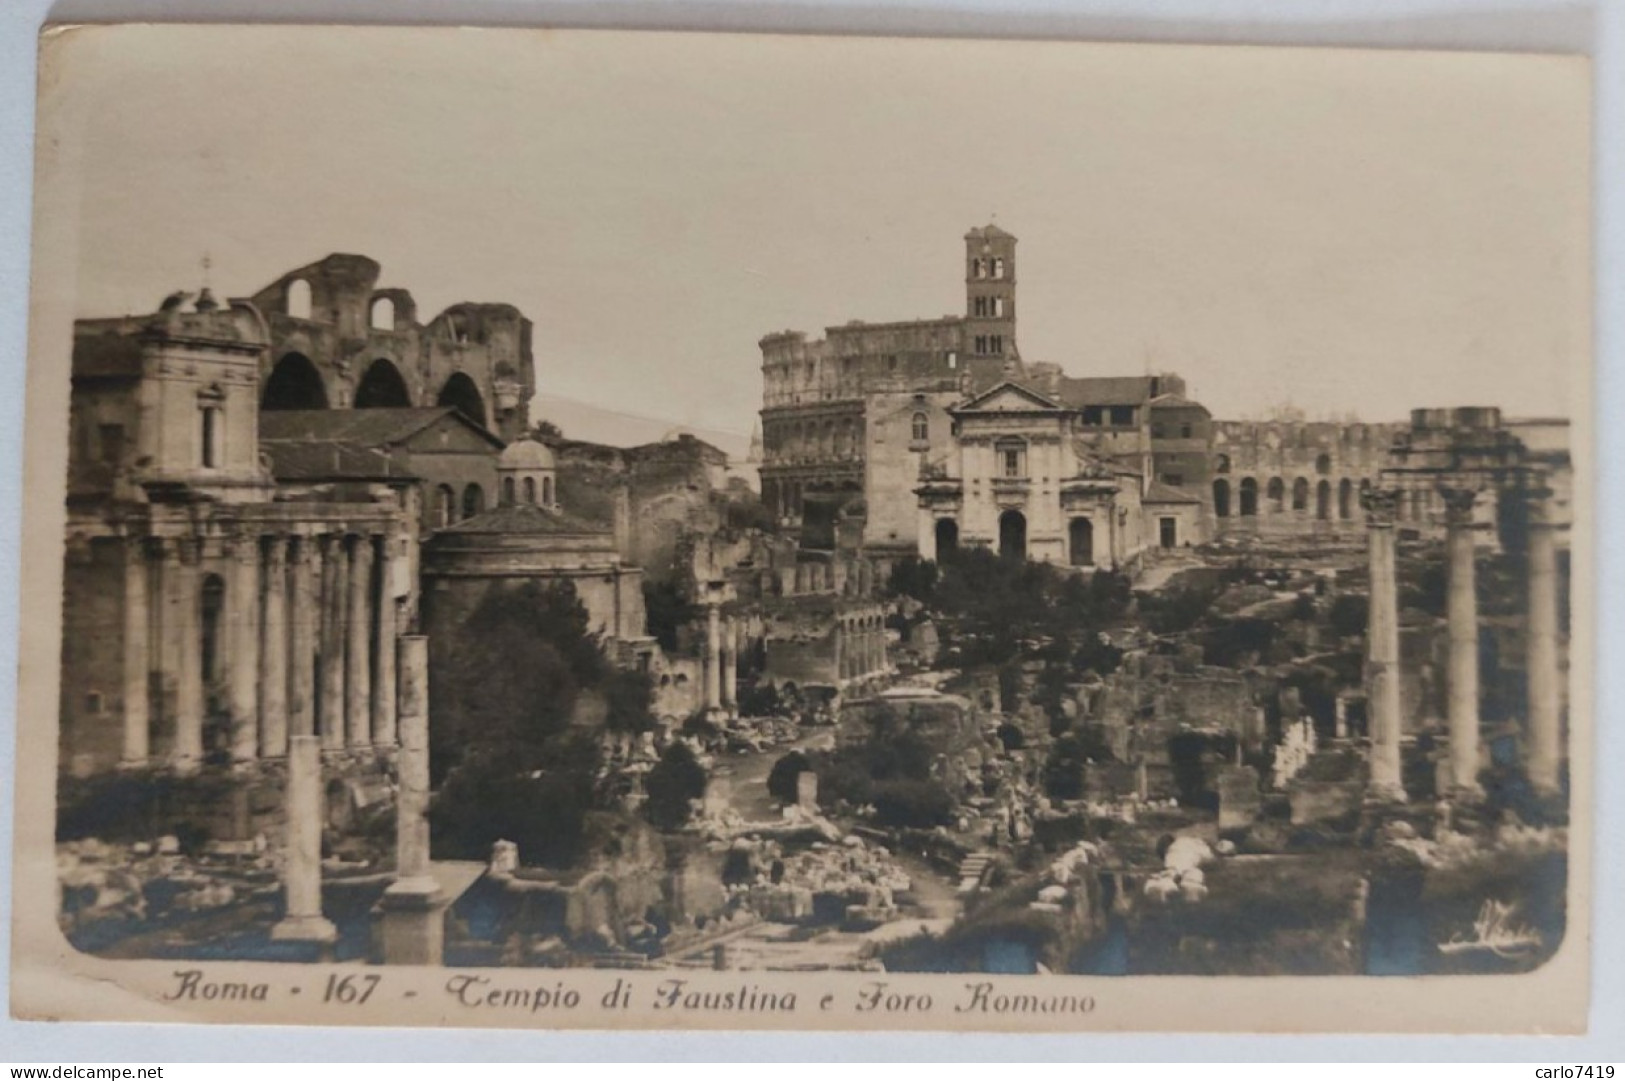 1928 - Roma - Tempio Di Faustina E Foro Romano - Viaggiata X Parma  - Crt0060 - Andere Monumente & Gebäude